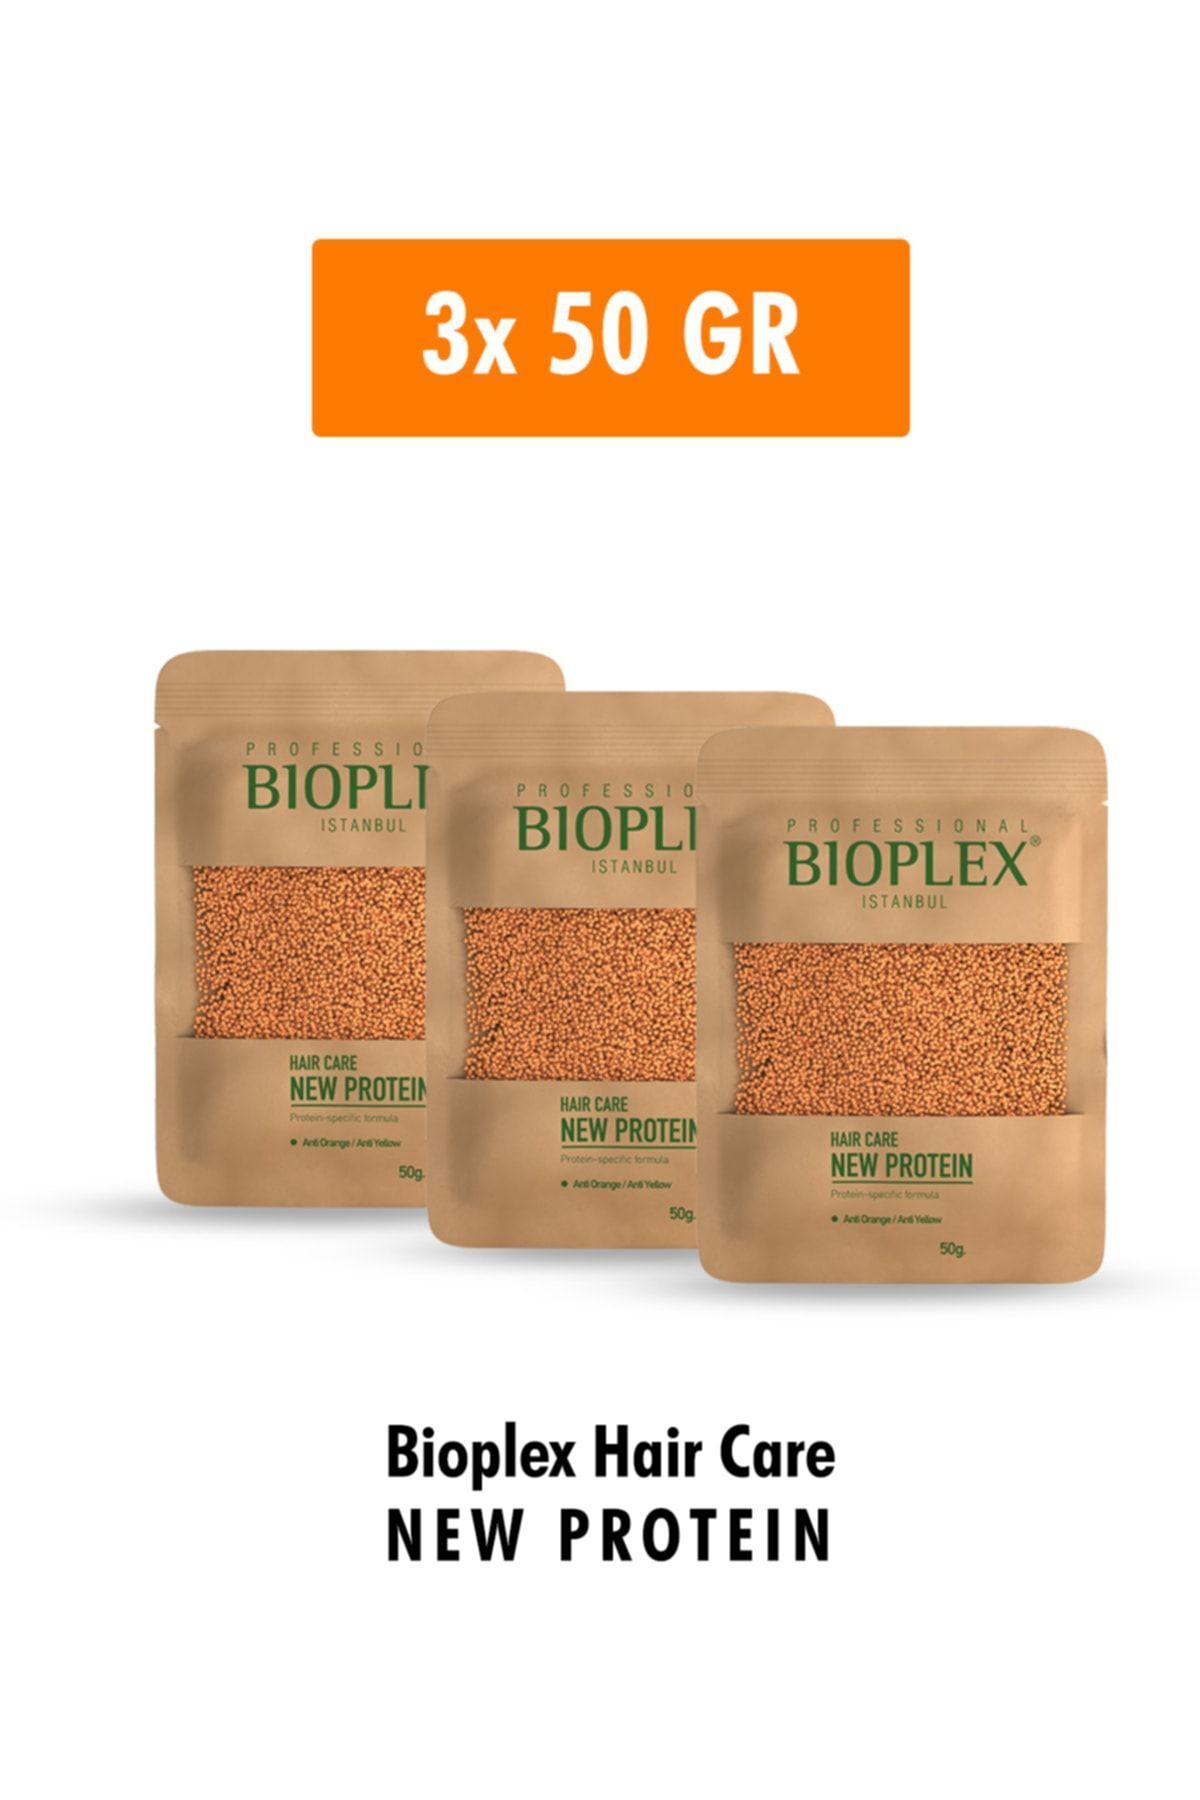 Bioplex Saç Bakım Proteini - Saç Açma Ve Boya Işlemlerinde Yıpranmalara Karşı Özel Ürün 3x50 Gr - 3 Paket